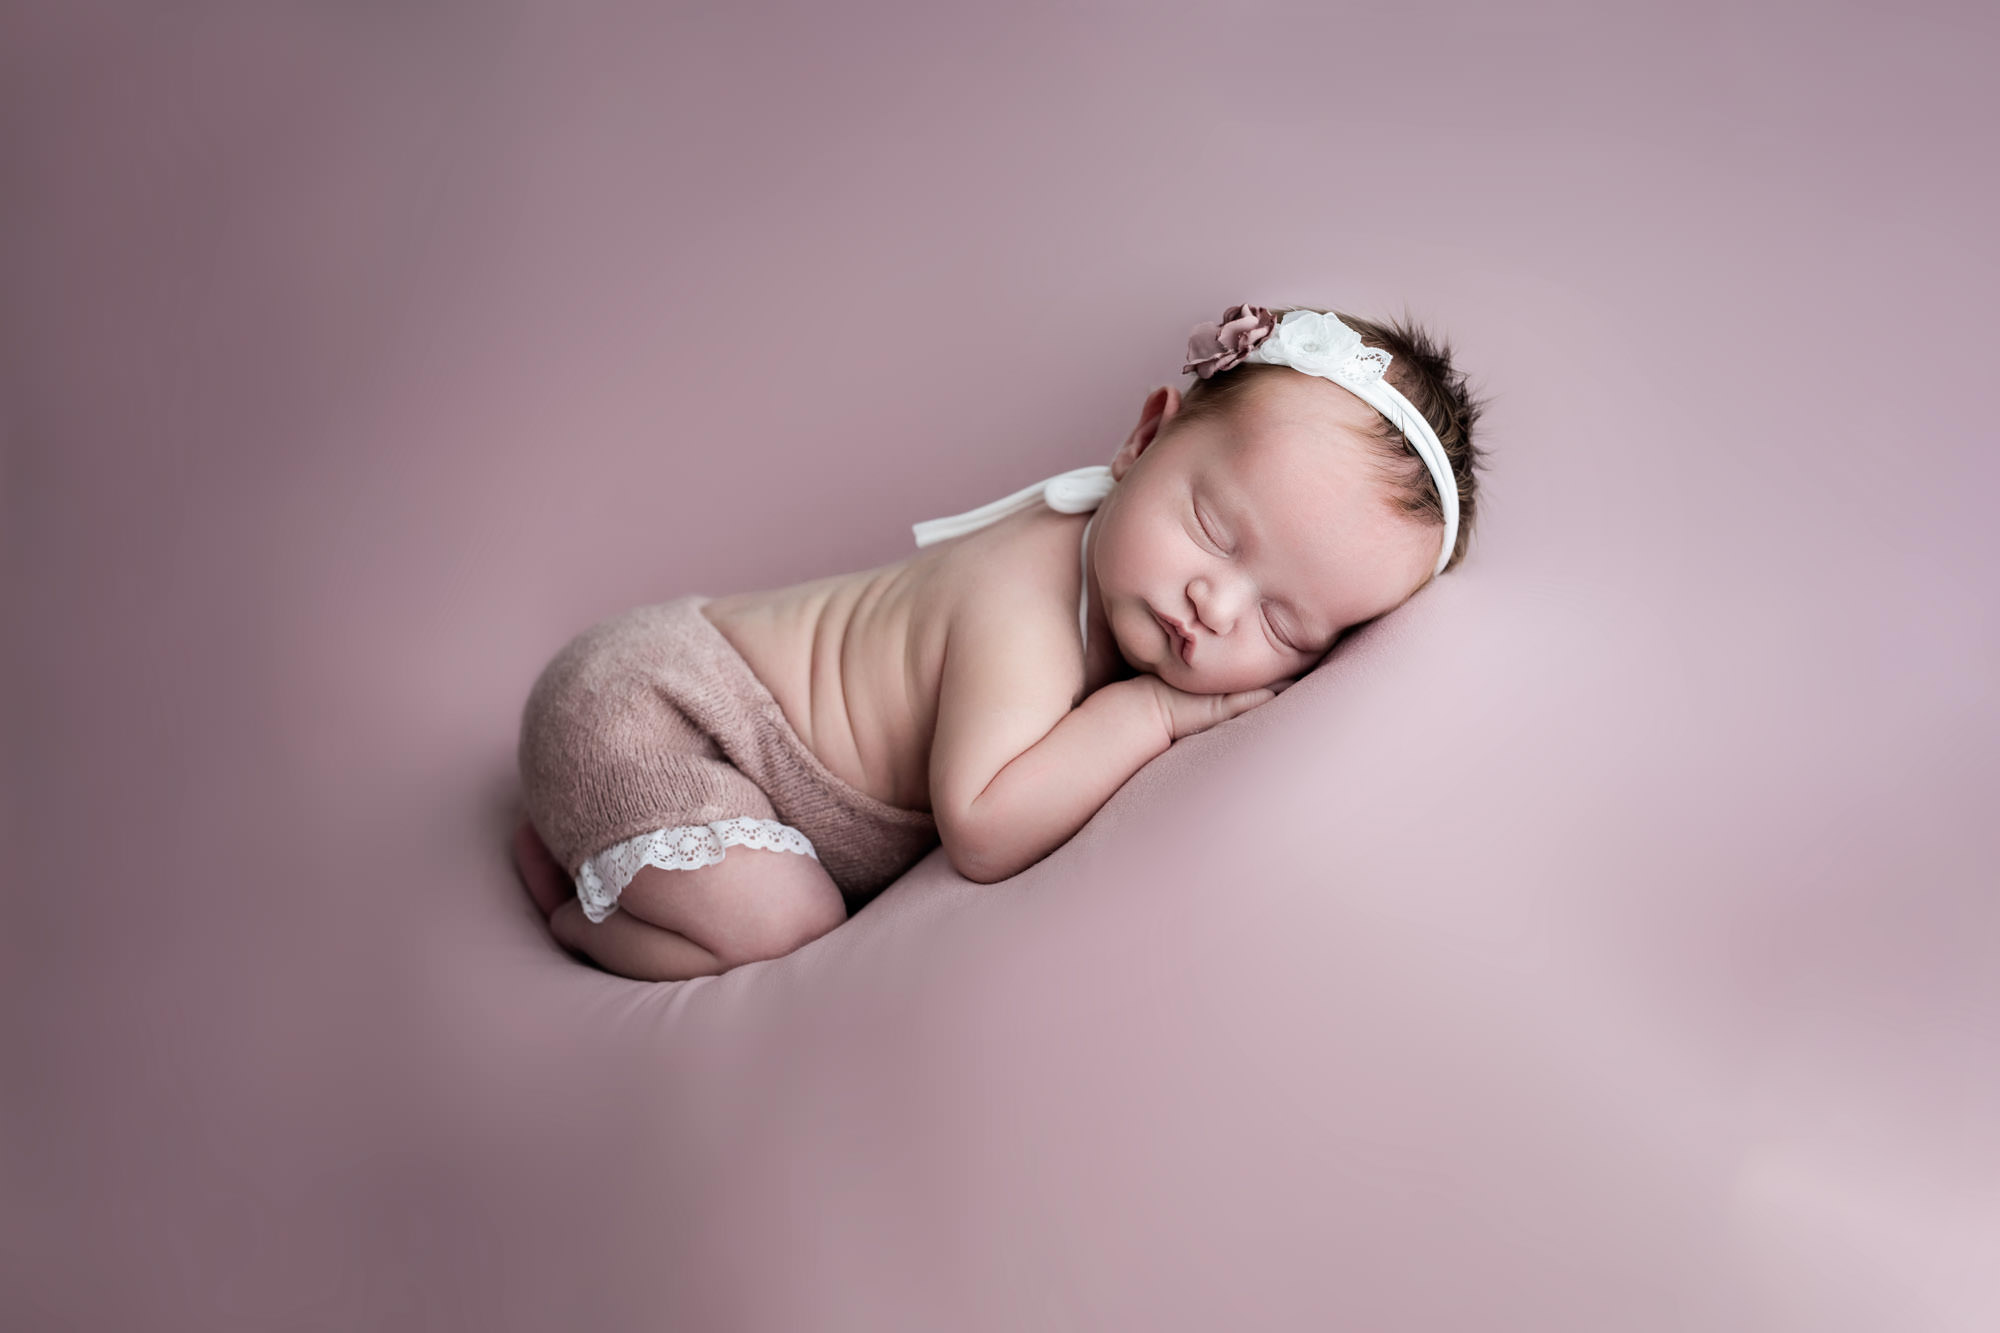 Newborn baby girl at her baby photoshoot